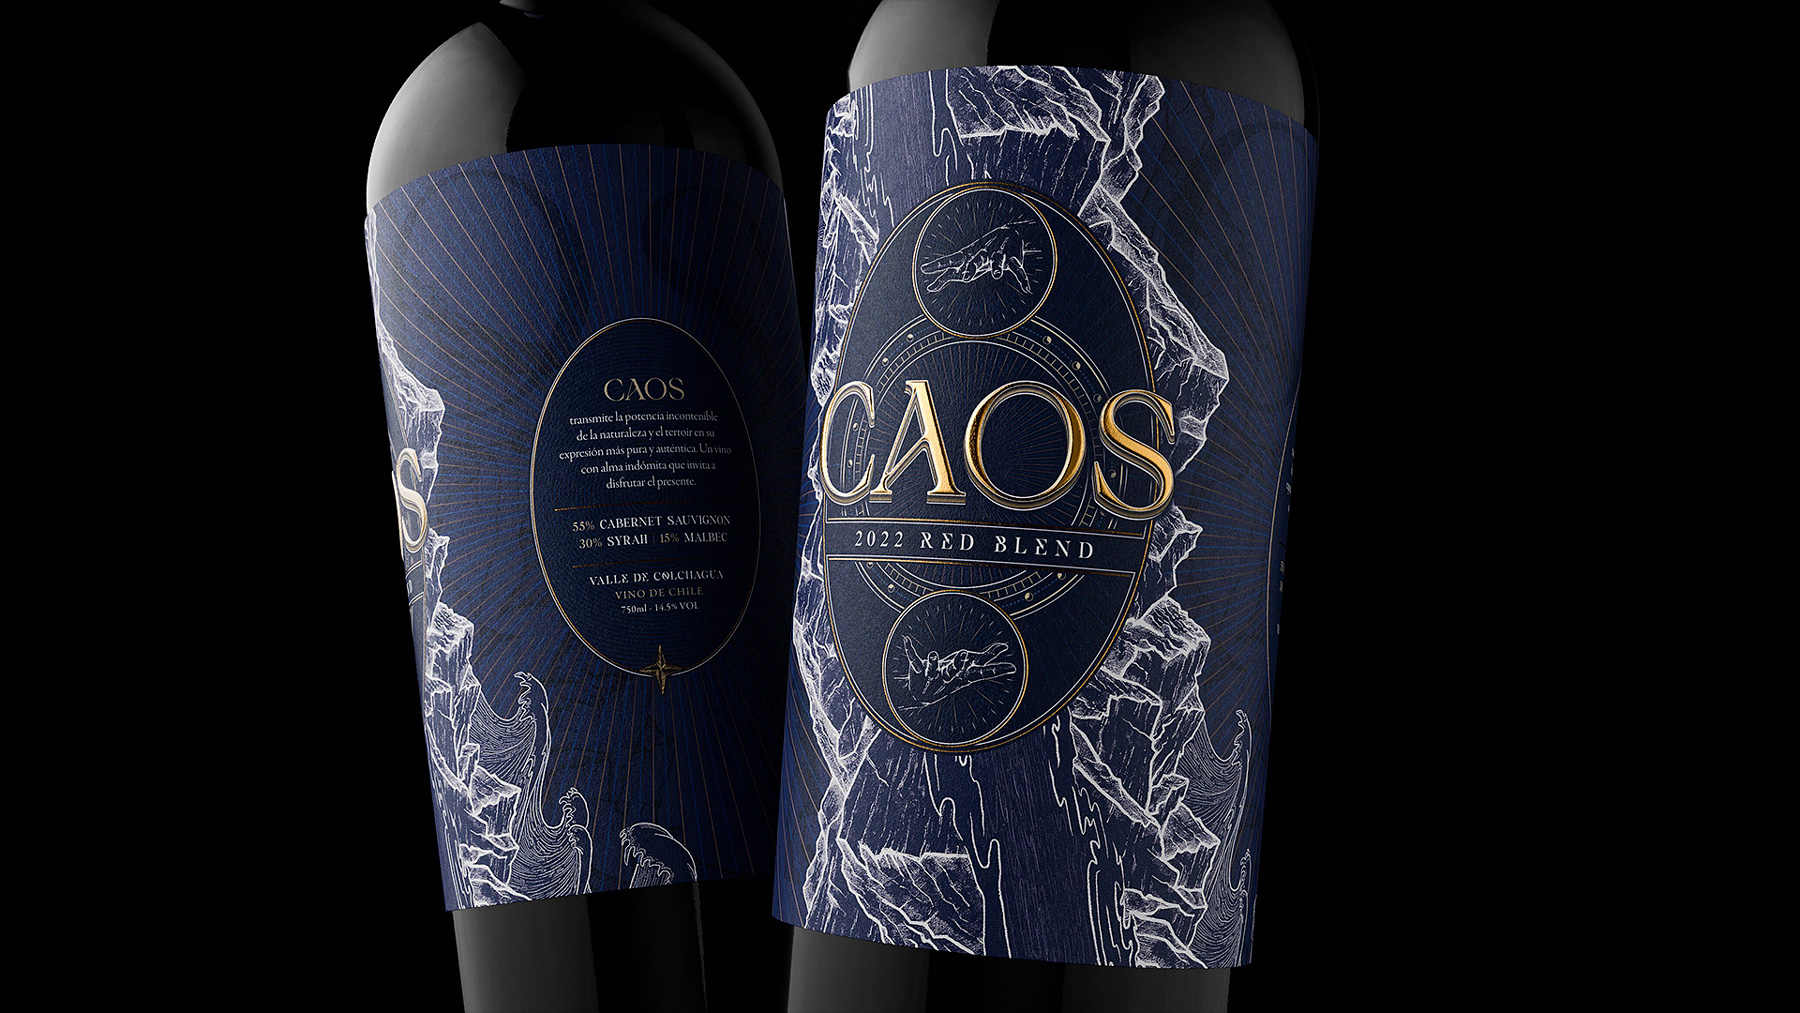 CAOS wine label design